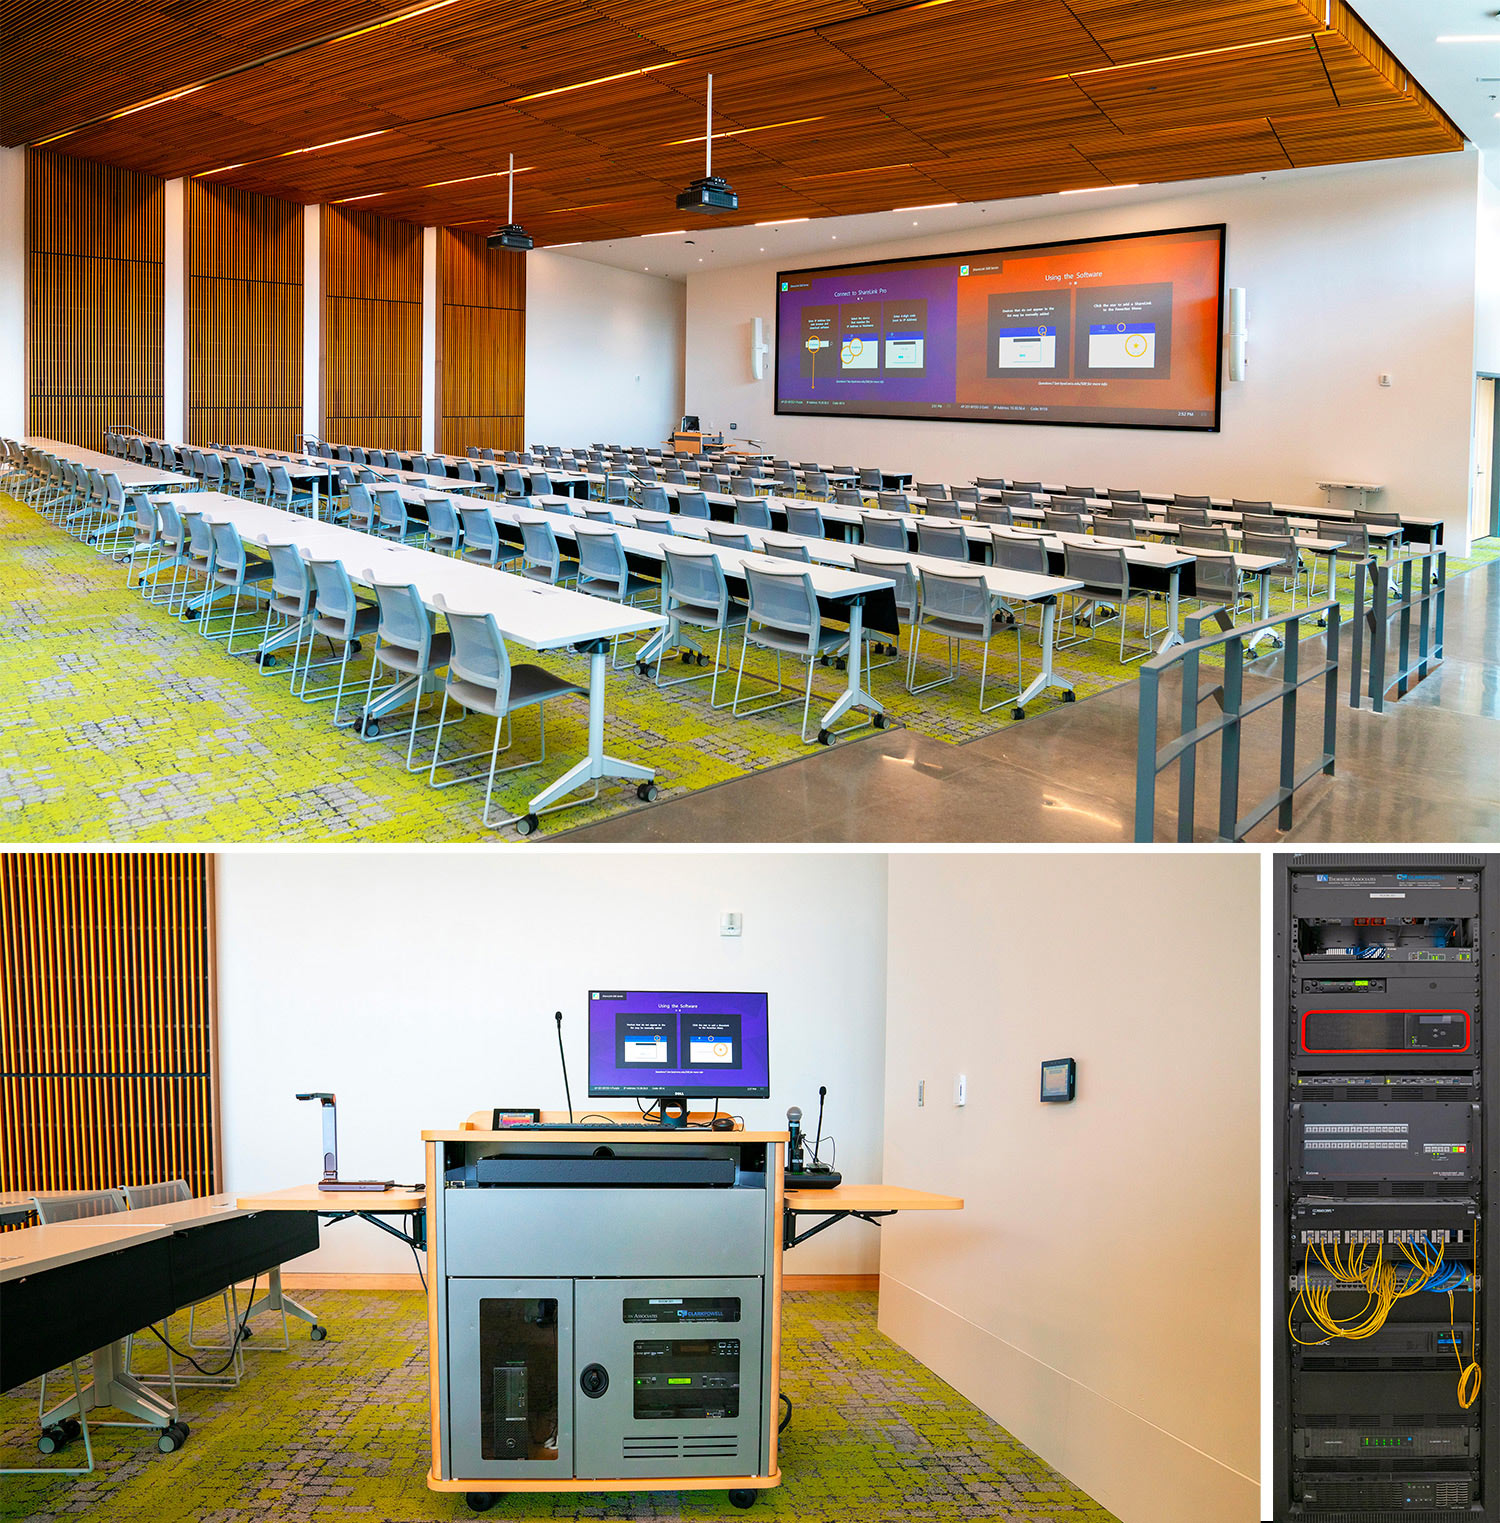 Classroom 201 ist ein Hörsaal für 150 Teilnehmer. Das AV-System besteht aus zwei Projektoren, einem Flachbildmonitor zur Vorschau, kabelgebundenen und kabellosen Mikrofonen, zwei ShareLink Pro-Gateways für Präsentationen, einem Annotator 300-Prozessor für das Hinzufügen von Anmerkungen mit einem Laptop auf dem Pult als Interface, einer XTP-Kreuzschiene, XTP AV-Signalverteilung und TouchLink Pro-Touchpanels an der Wand und dem Pult.